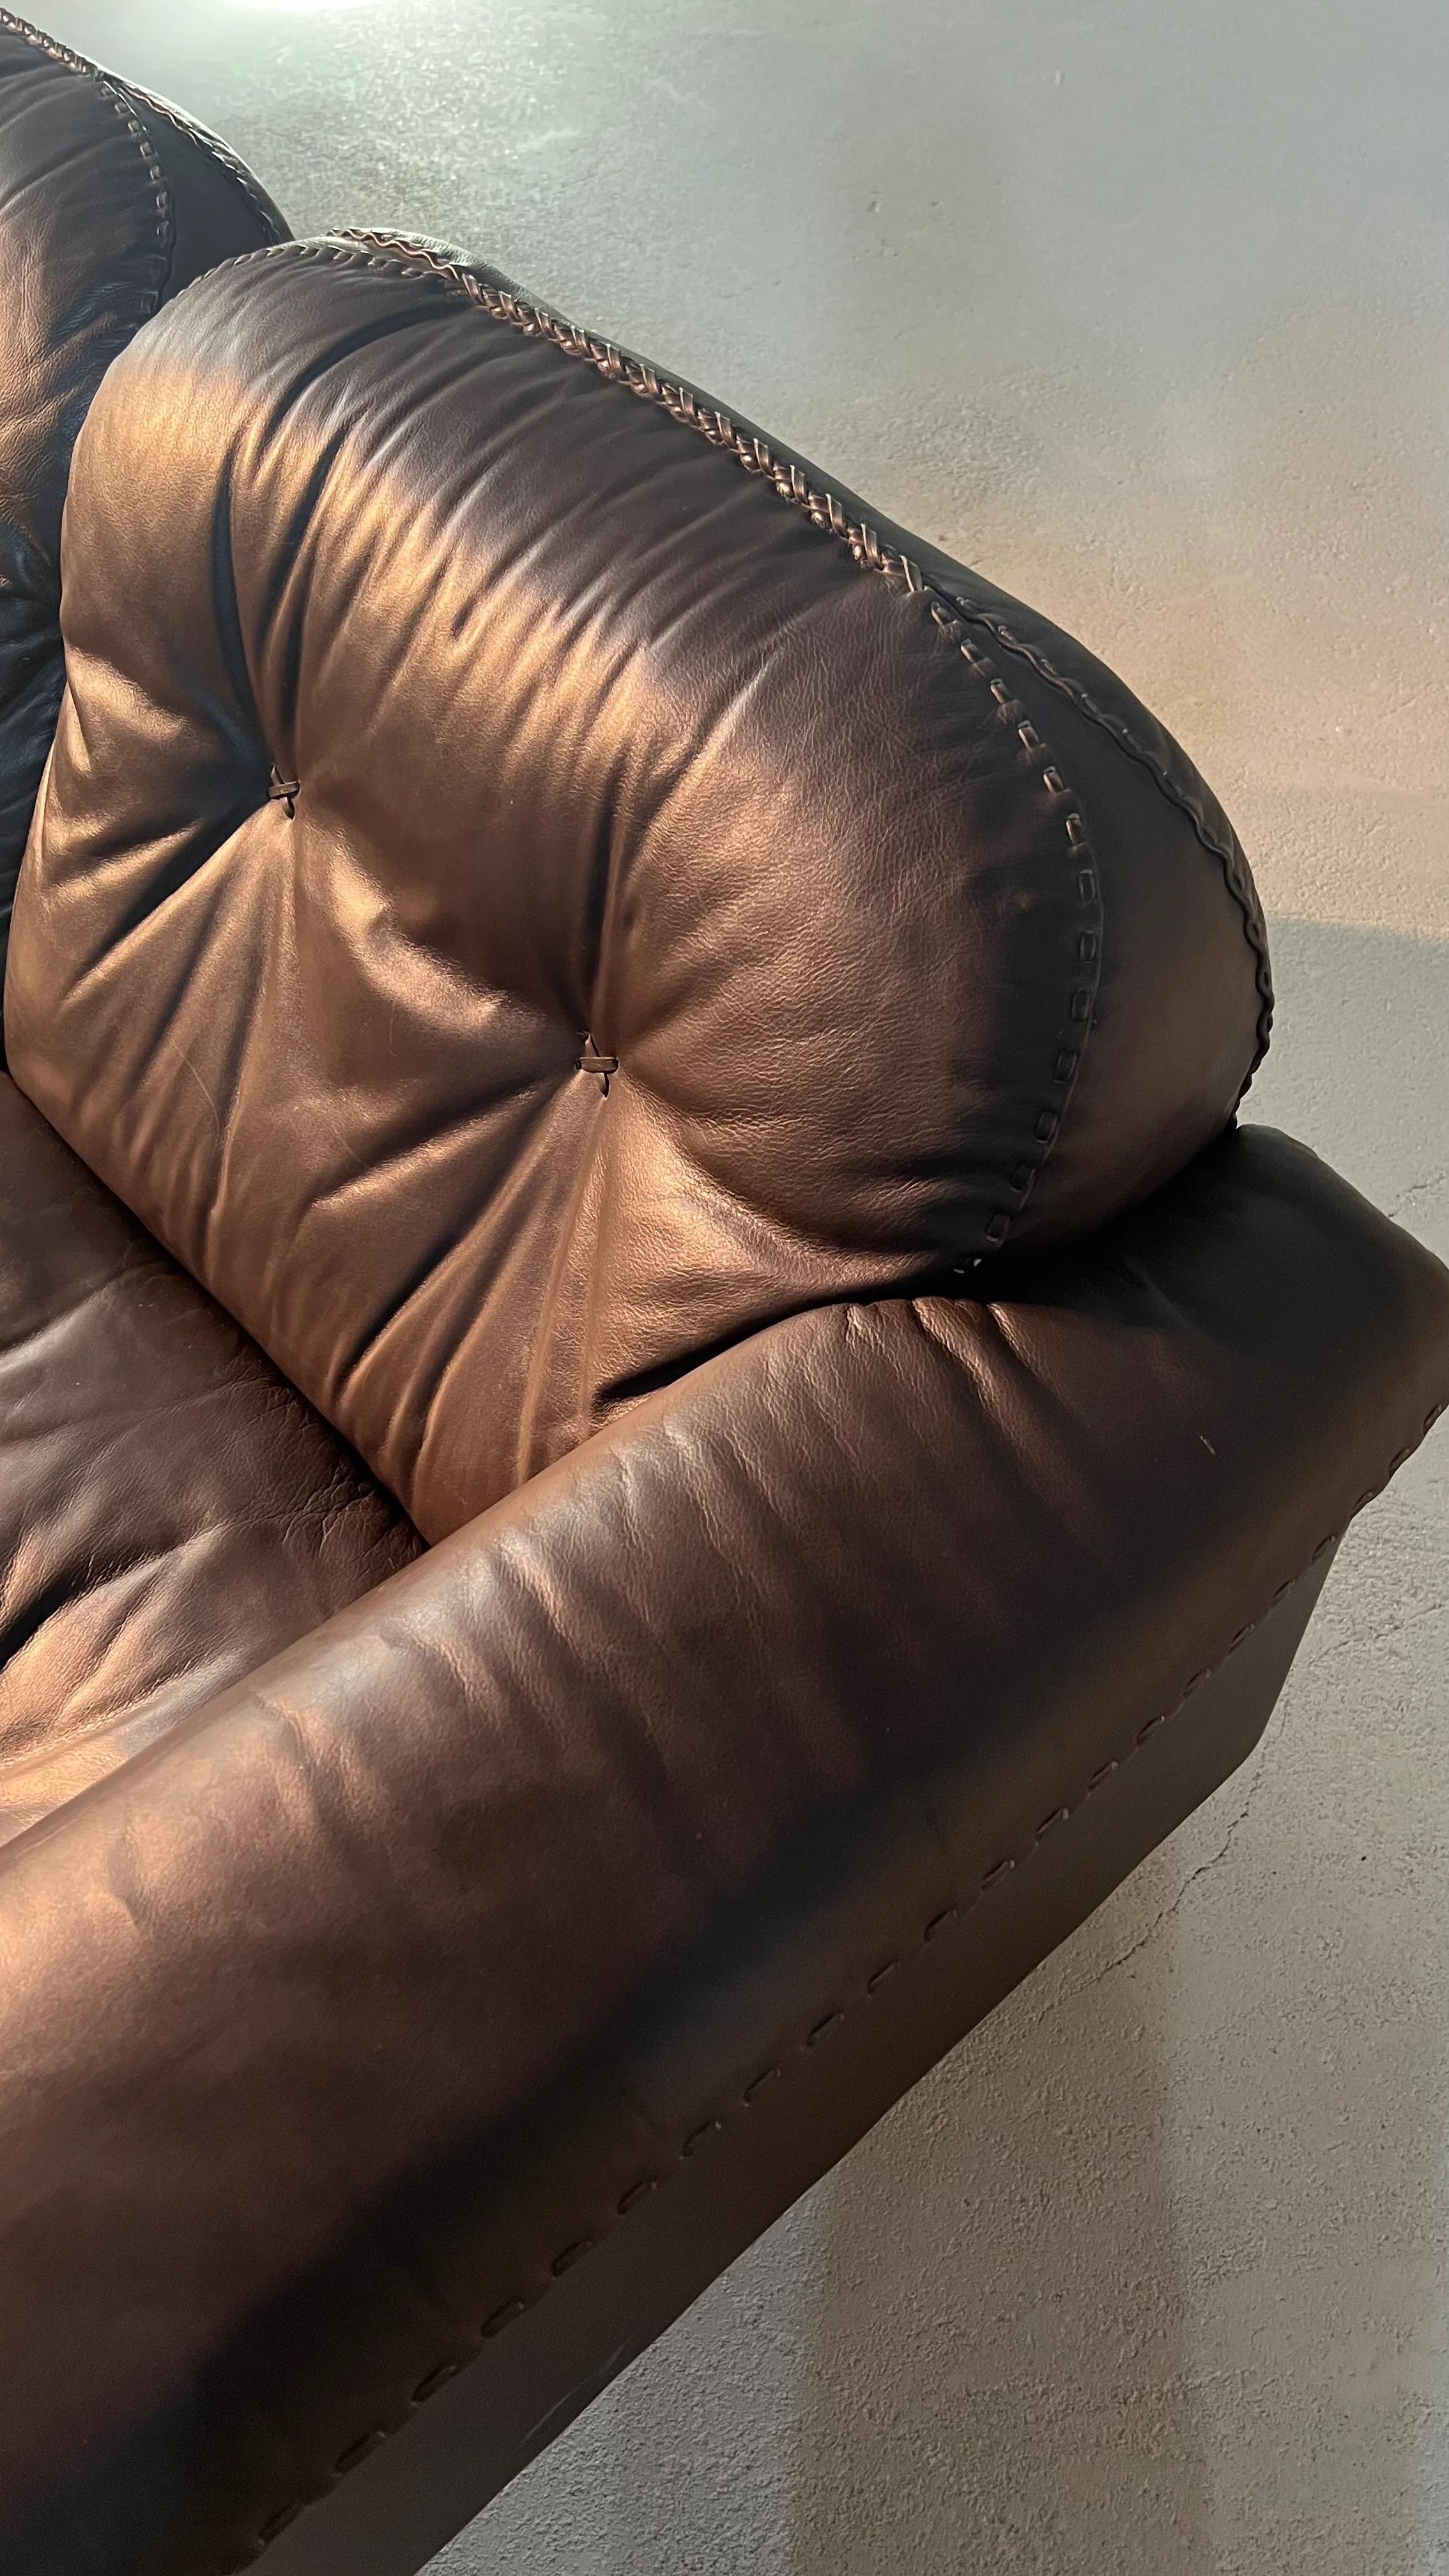 Canapé design suisse de haute qualité fabriqué par le célèbre fabricant artisanal de meubles De Sede. Le cuir marron et les surpiqûres de baseball confèrent à ce midcentury un caractère brutaliste typique. L'assise et le dossier peuvent être réglés